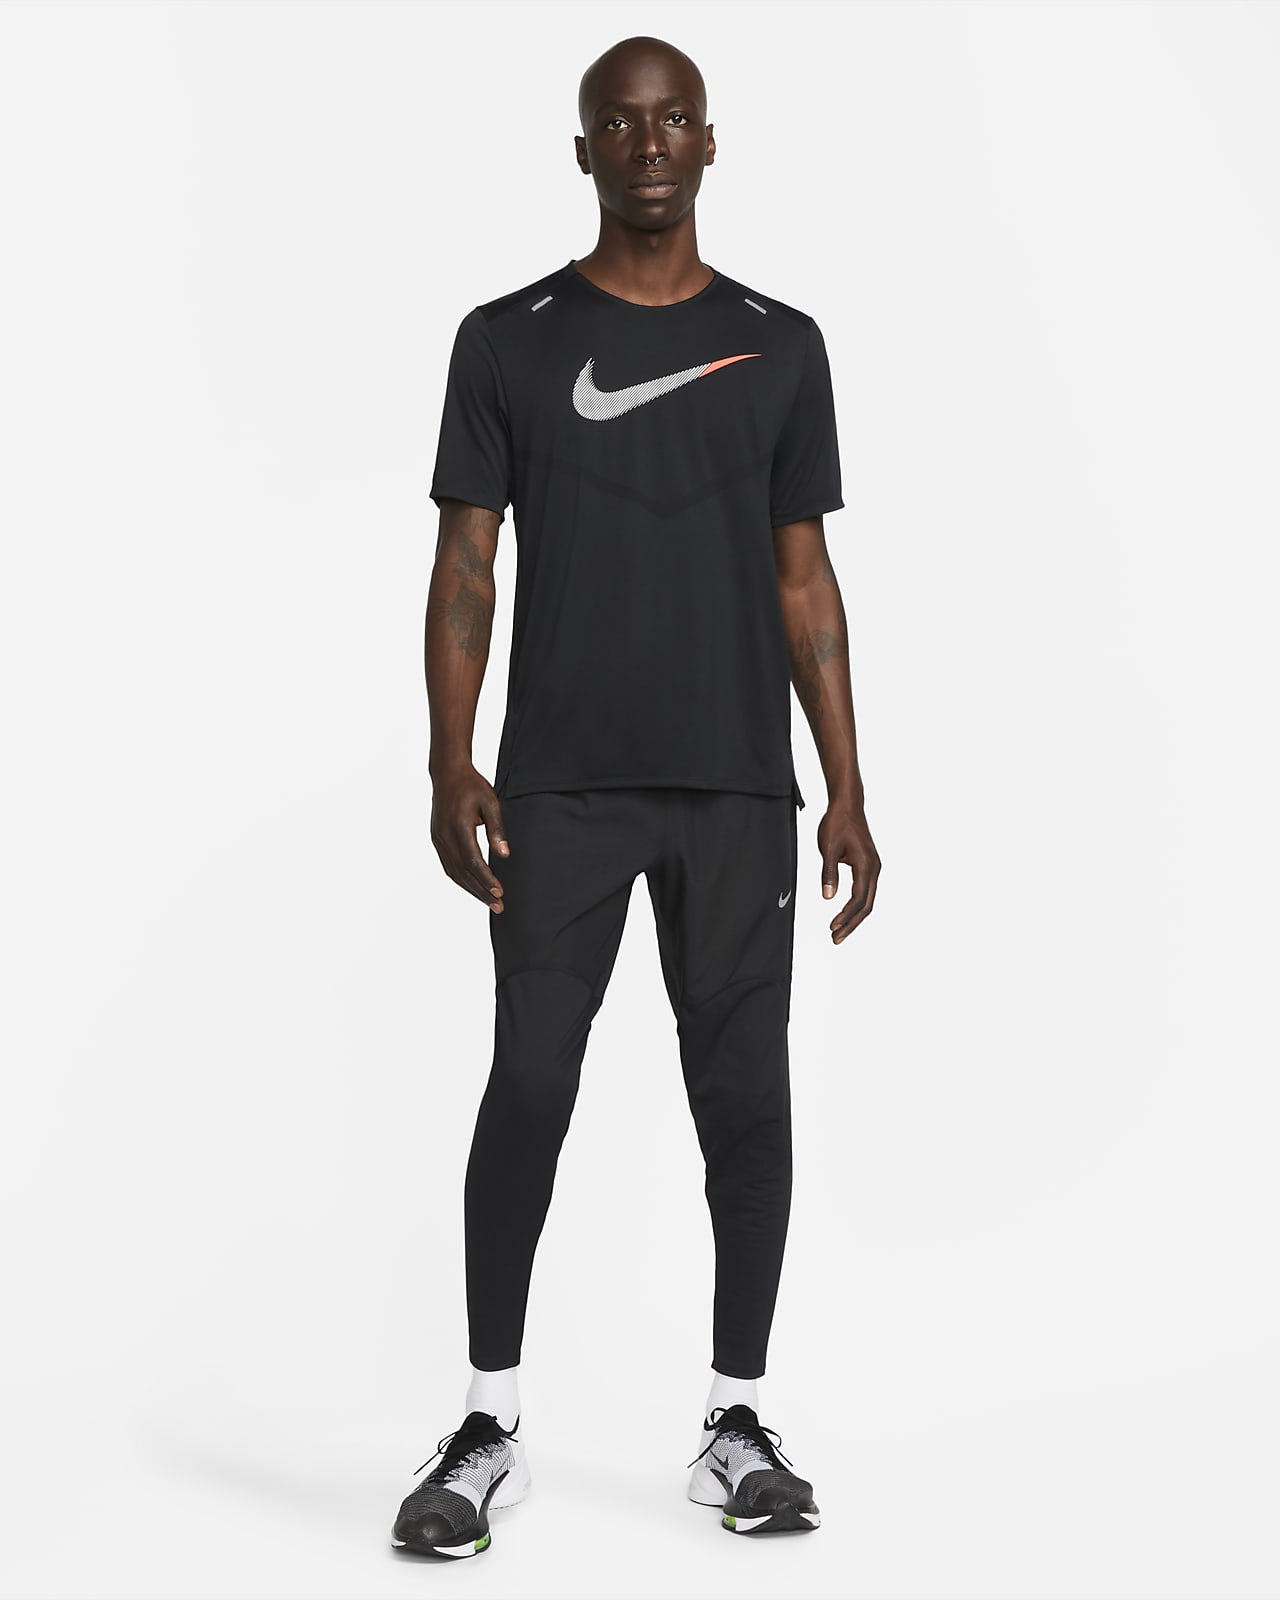 Jogging Nike Swoosh Blanc et Noir Homme - Technologie Dri-Fit